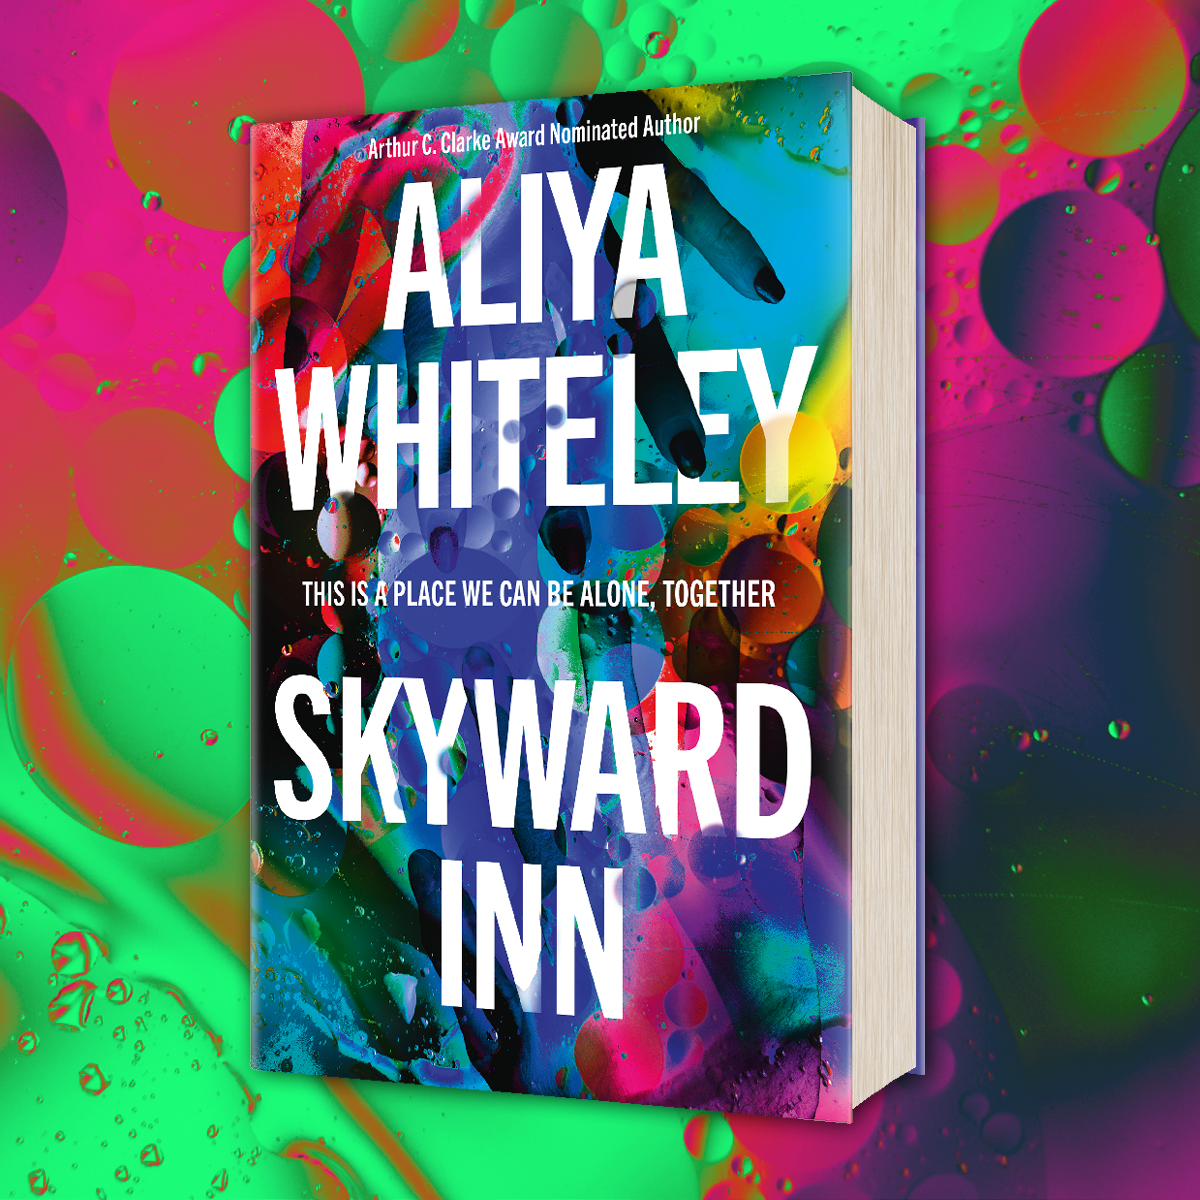 Hardback edition of Skyward Inn by Aliya Whiteley on a colourful background